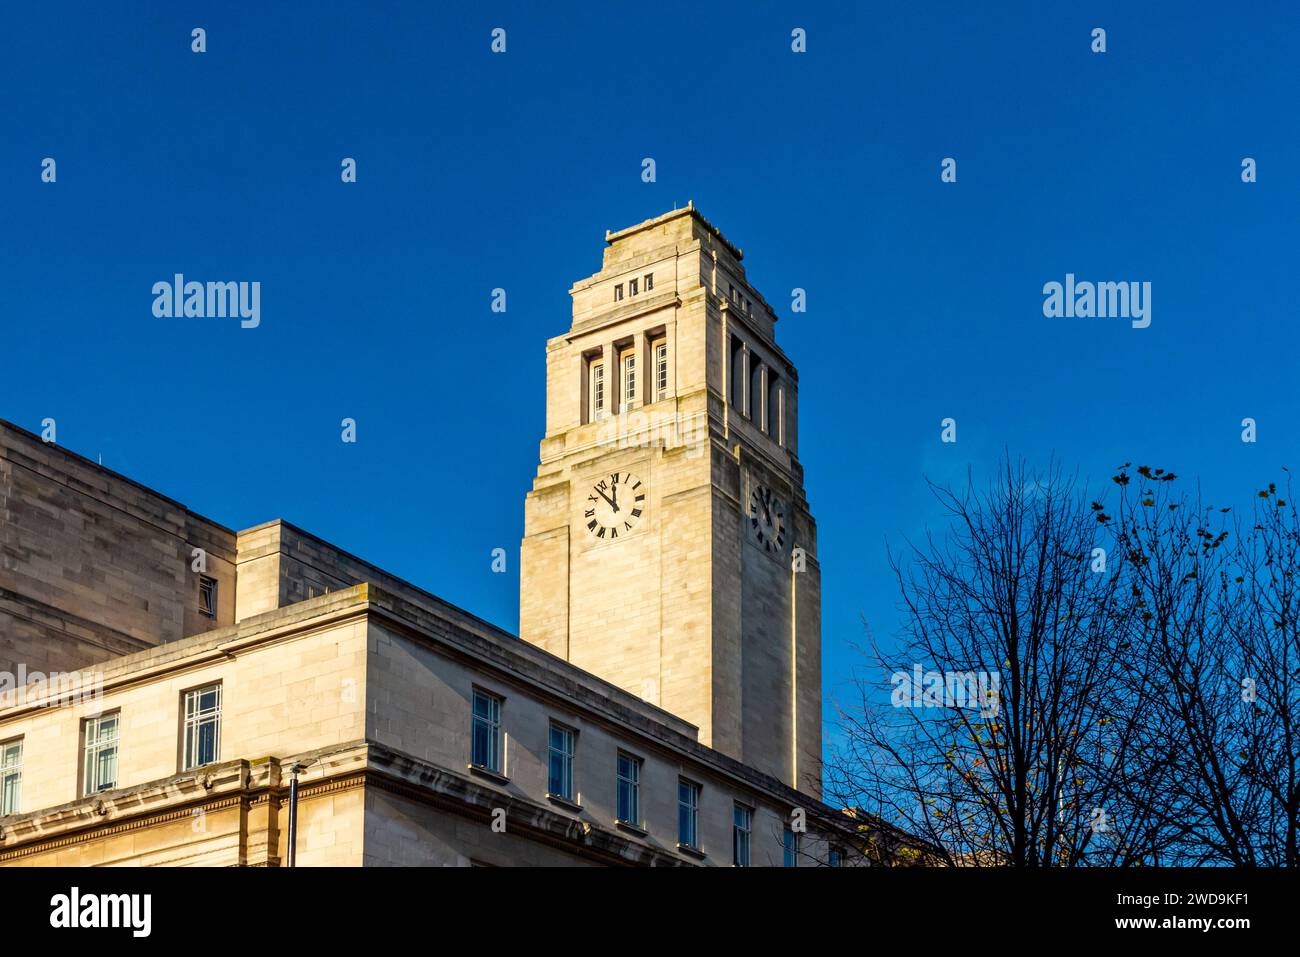 Der Uhrenturm am Parkinson Building Leeds University West Yorkshire England wurde 1951 von Thomas Lodge und Thomas Lucas im griechischen Revival-Stil erbaut. Stockfoto